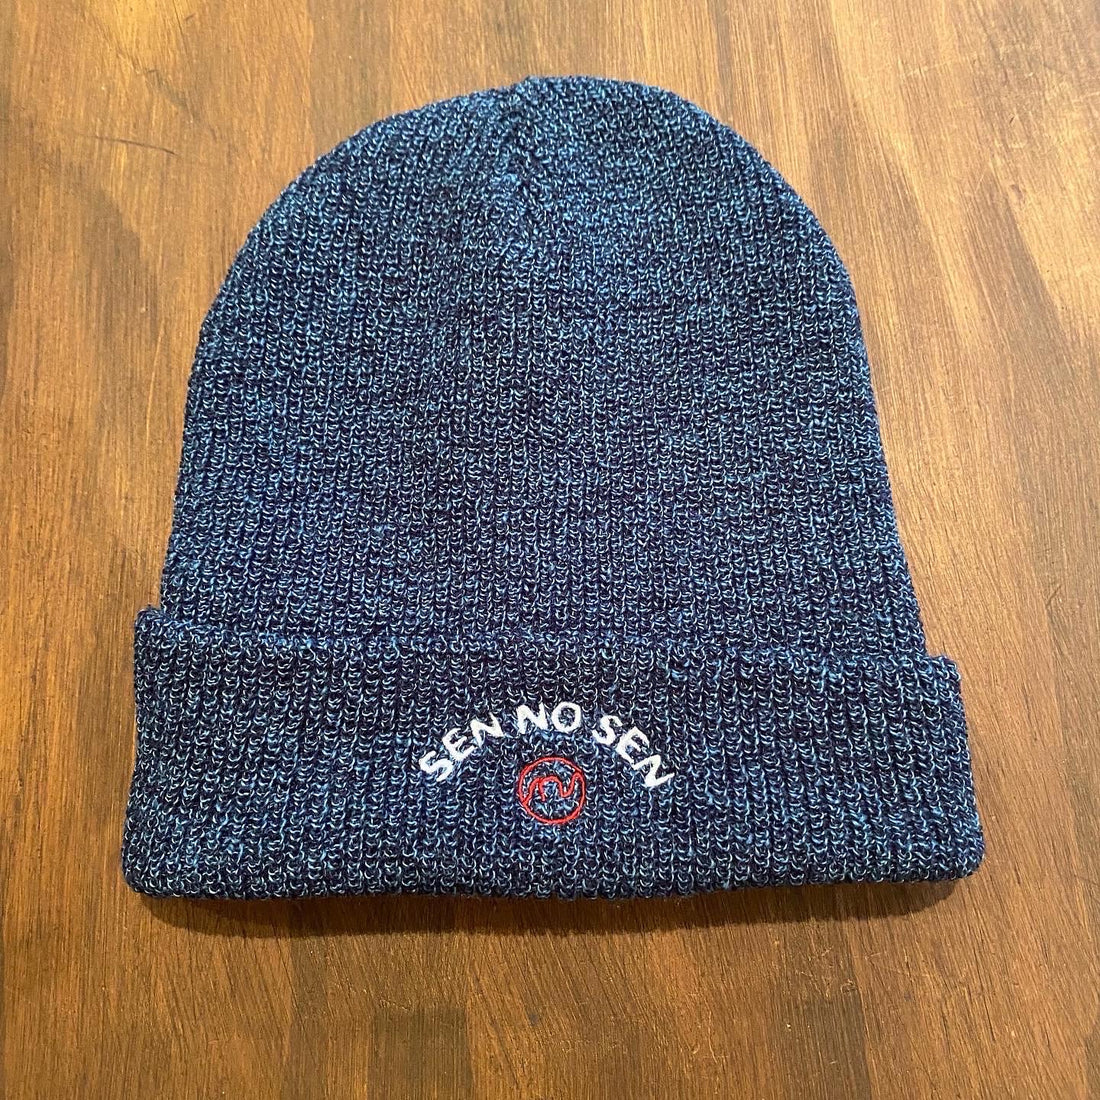 Sen No Sen embroidered hat